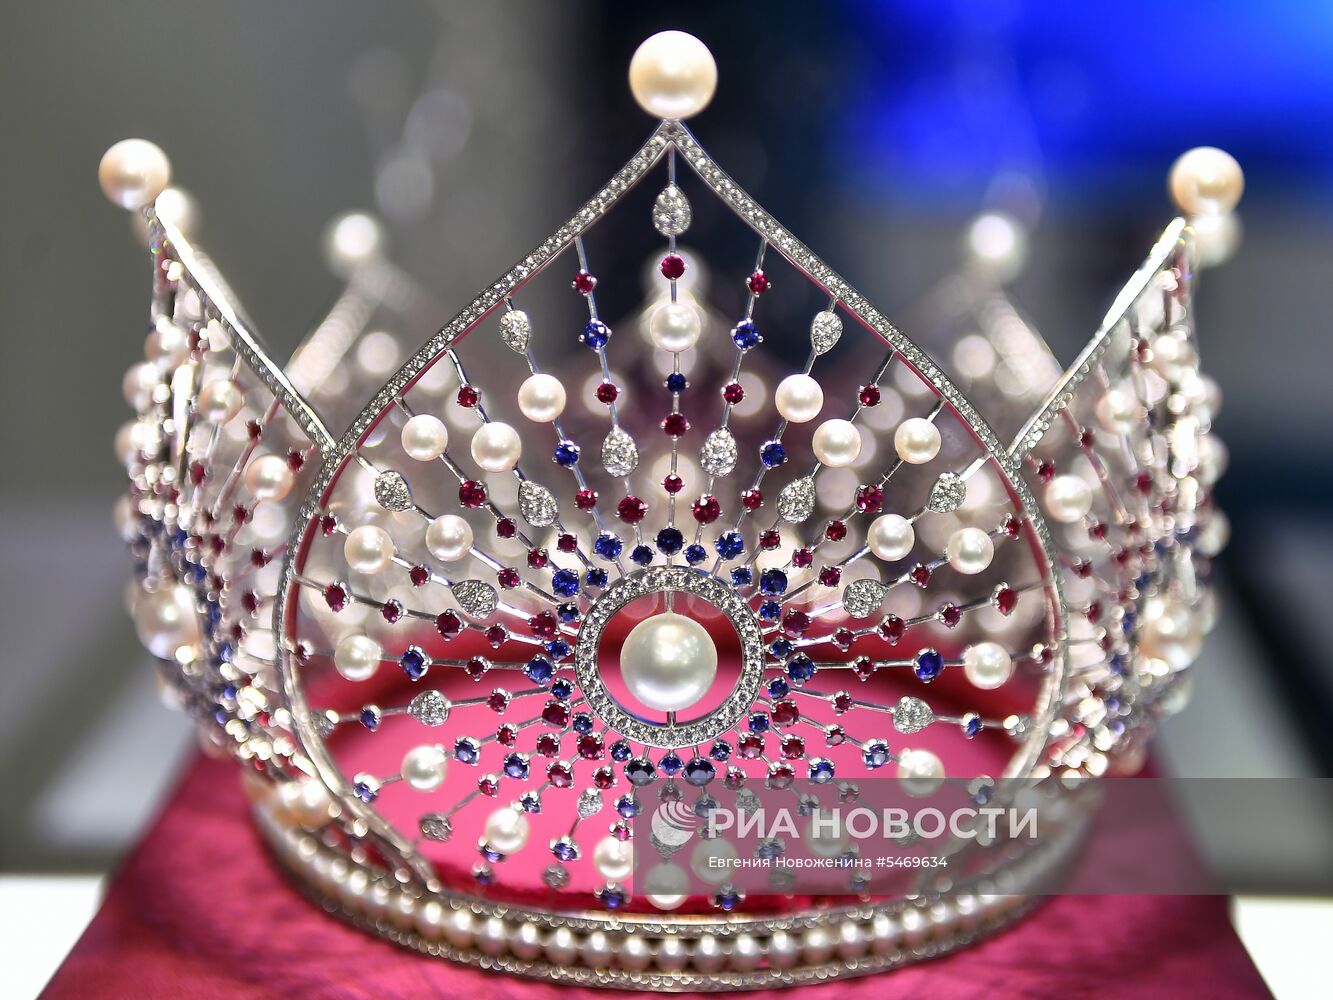 Презентация новой короны конкурса "Мисс Россия"